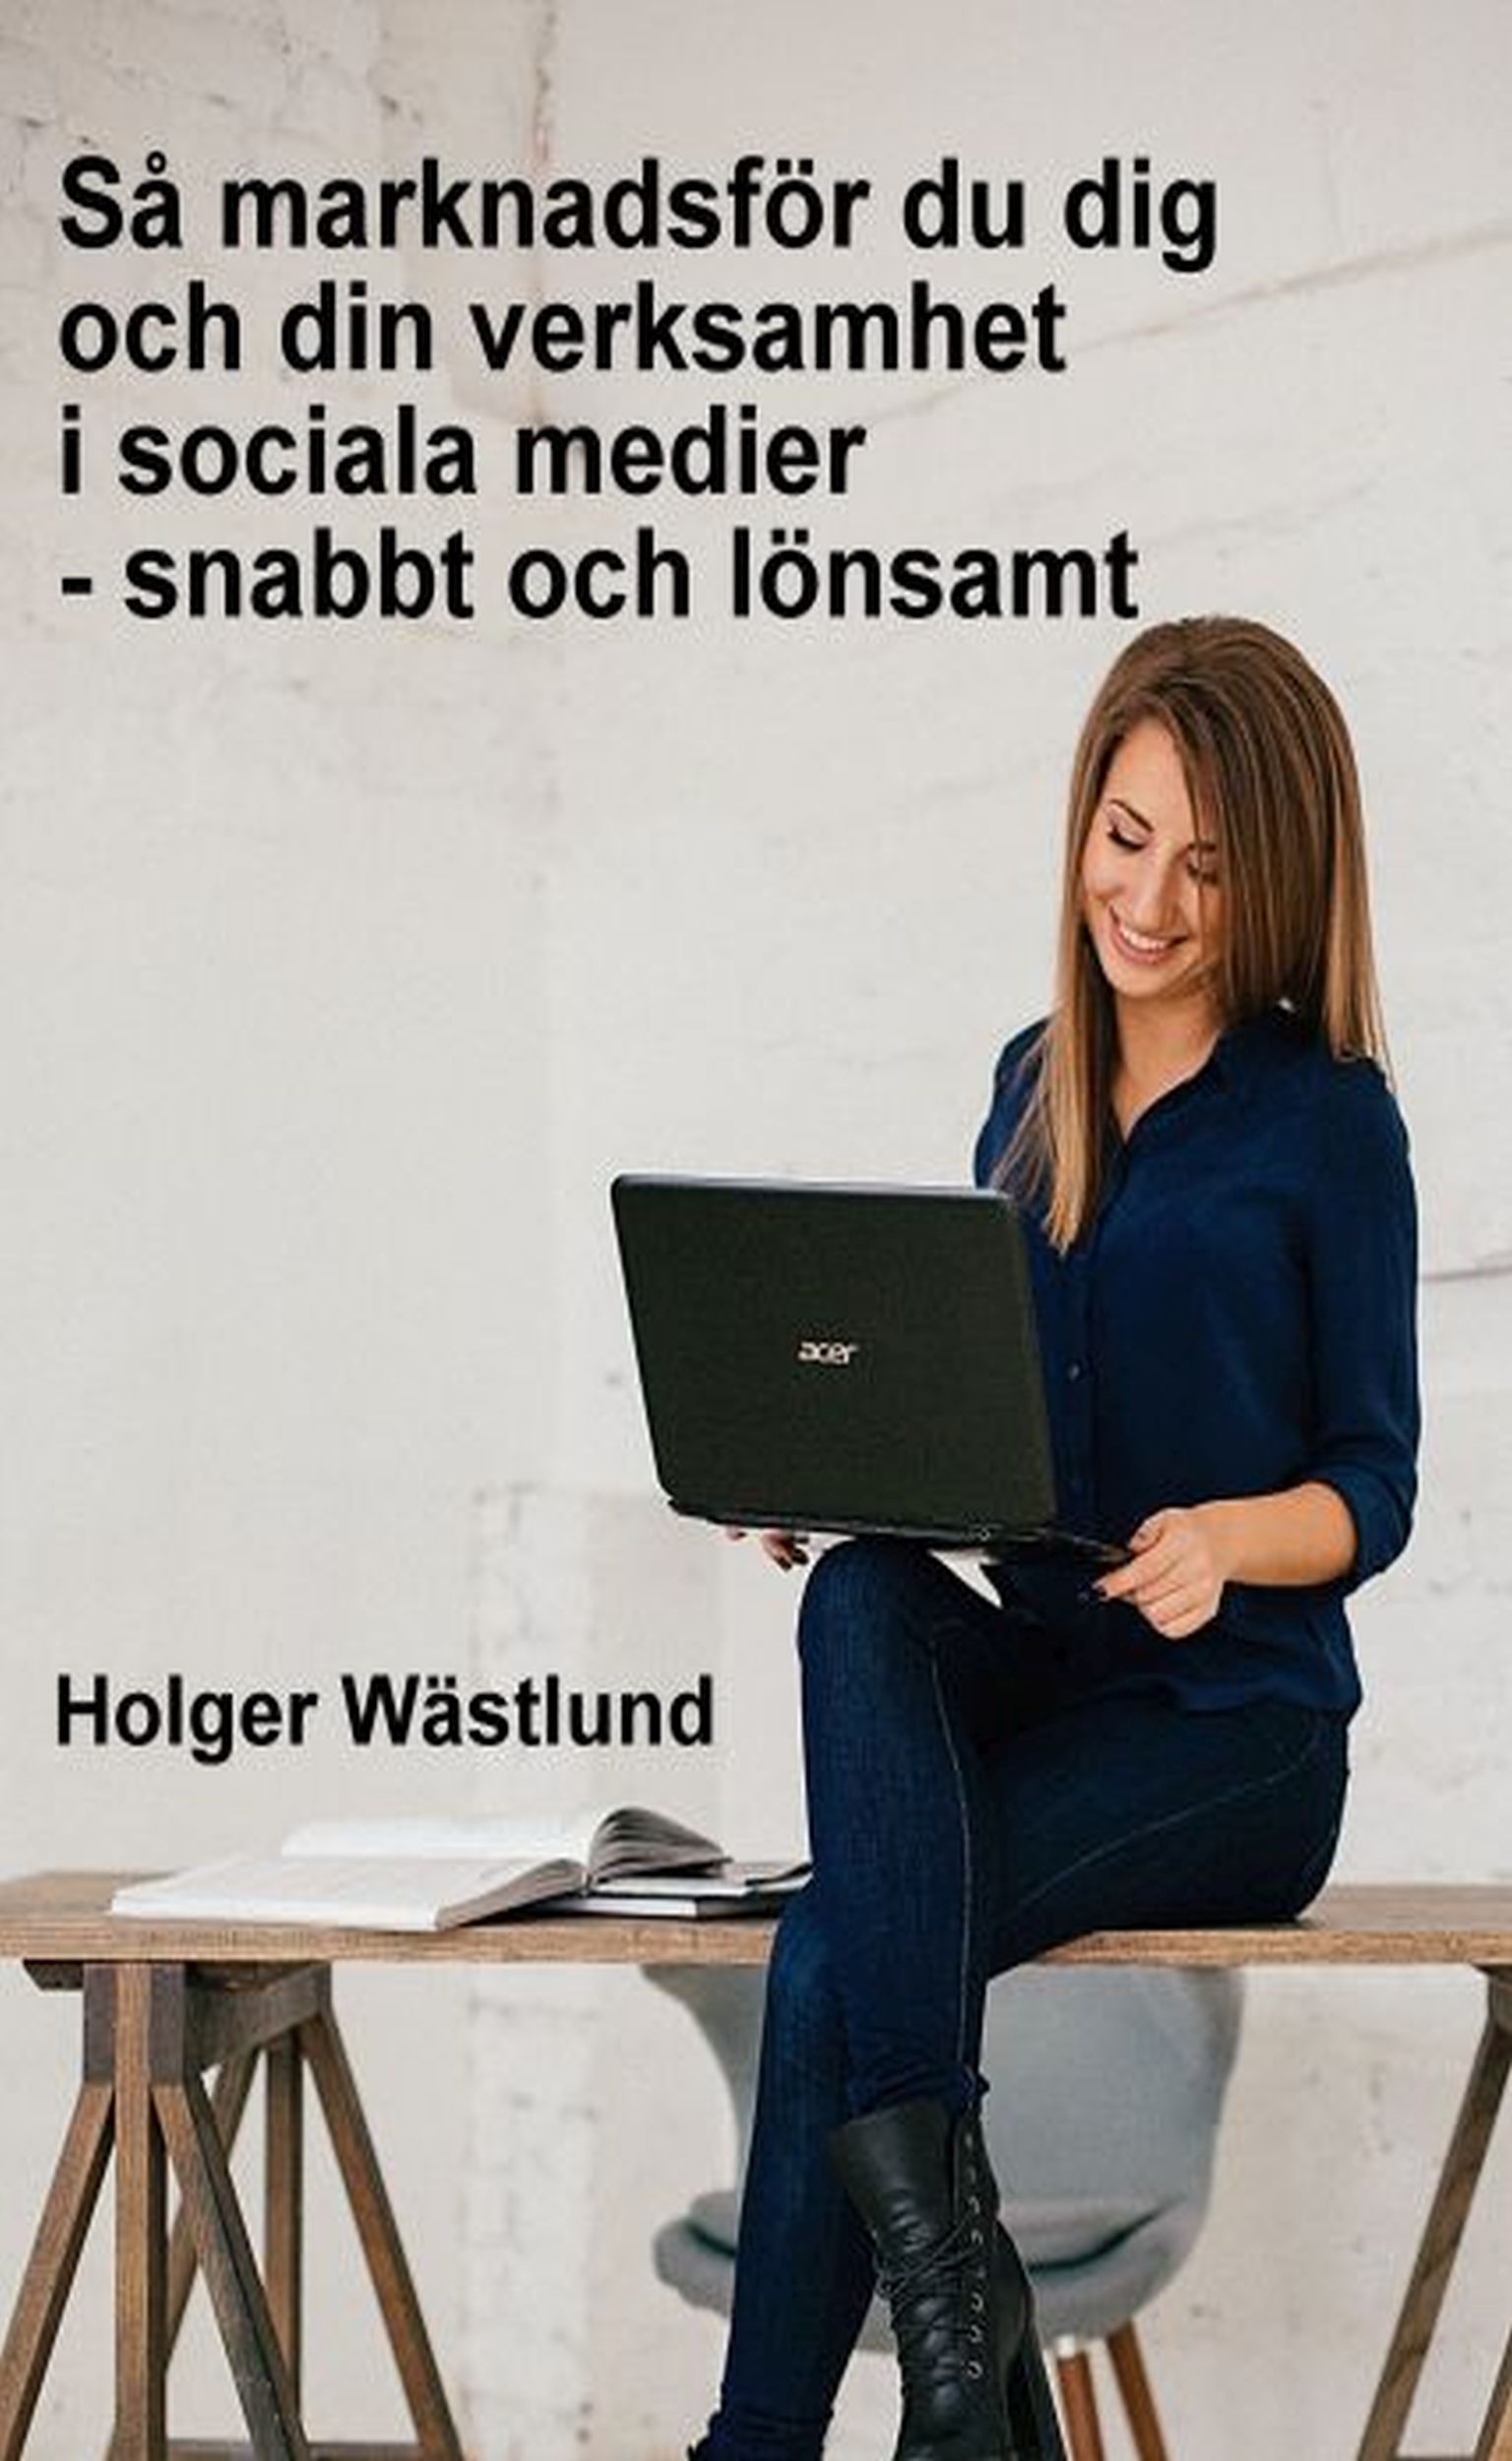 Så marknadsför du dig och din verksamhet i sociala medier - snabbt och lönsamt, e-bok av Holger Wästlund